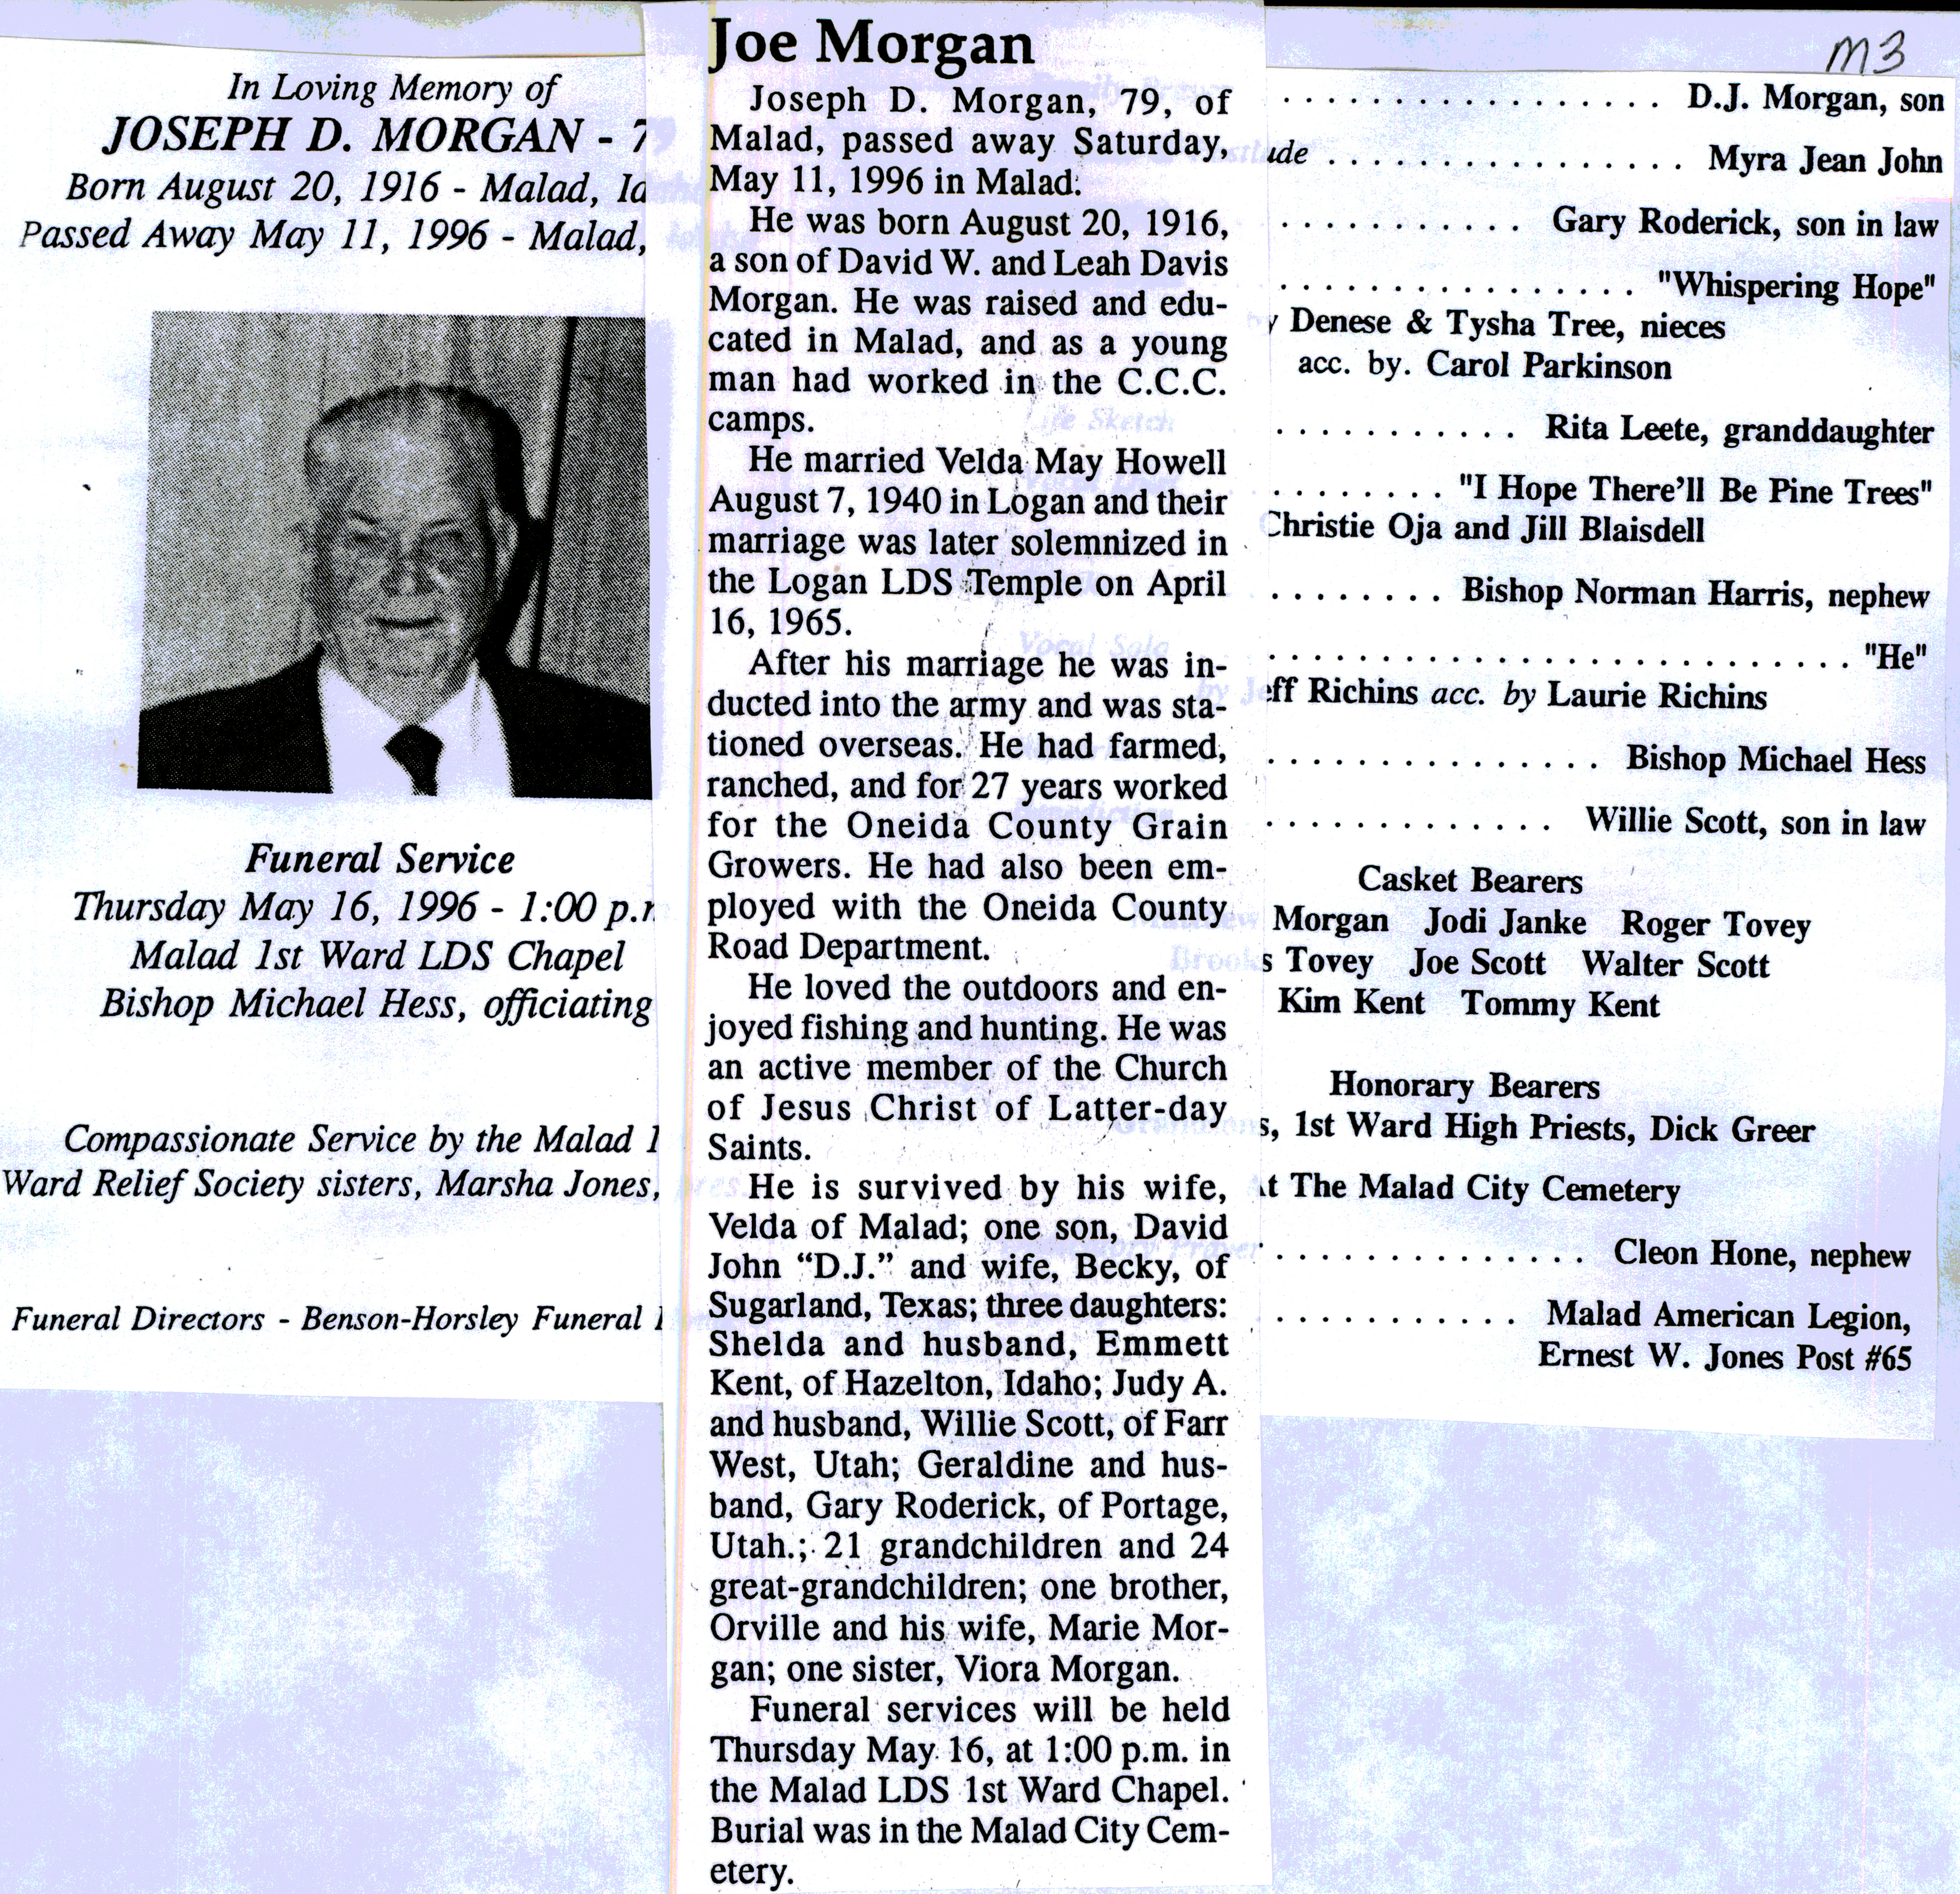 Joseph D Morgan obit and program